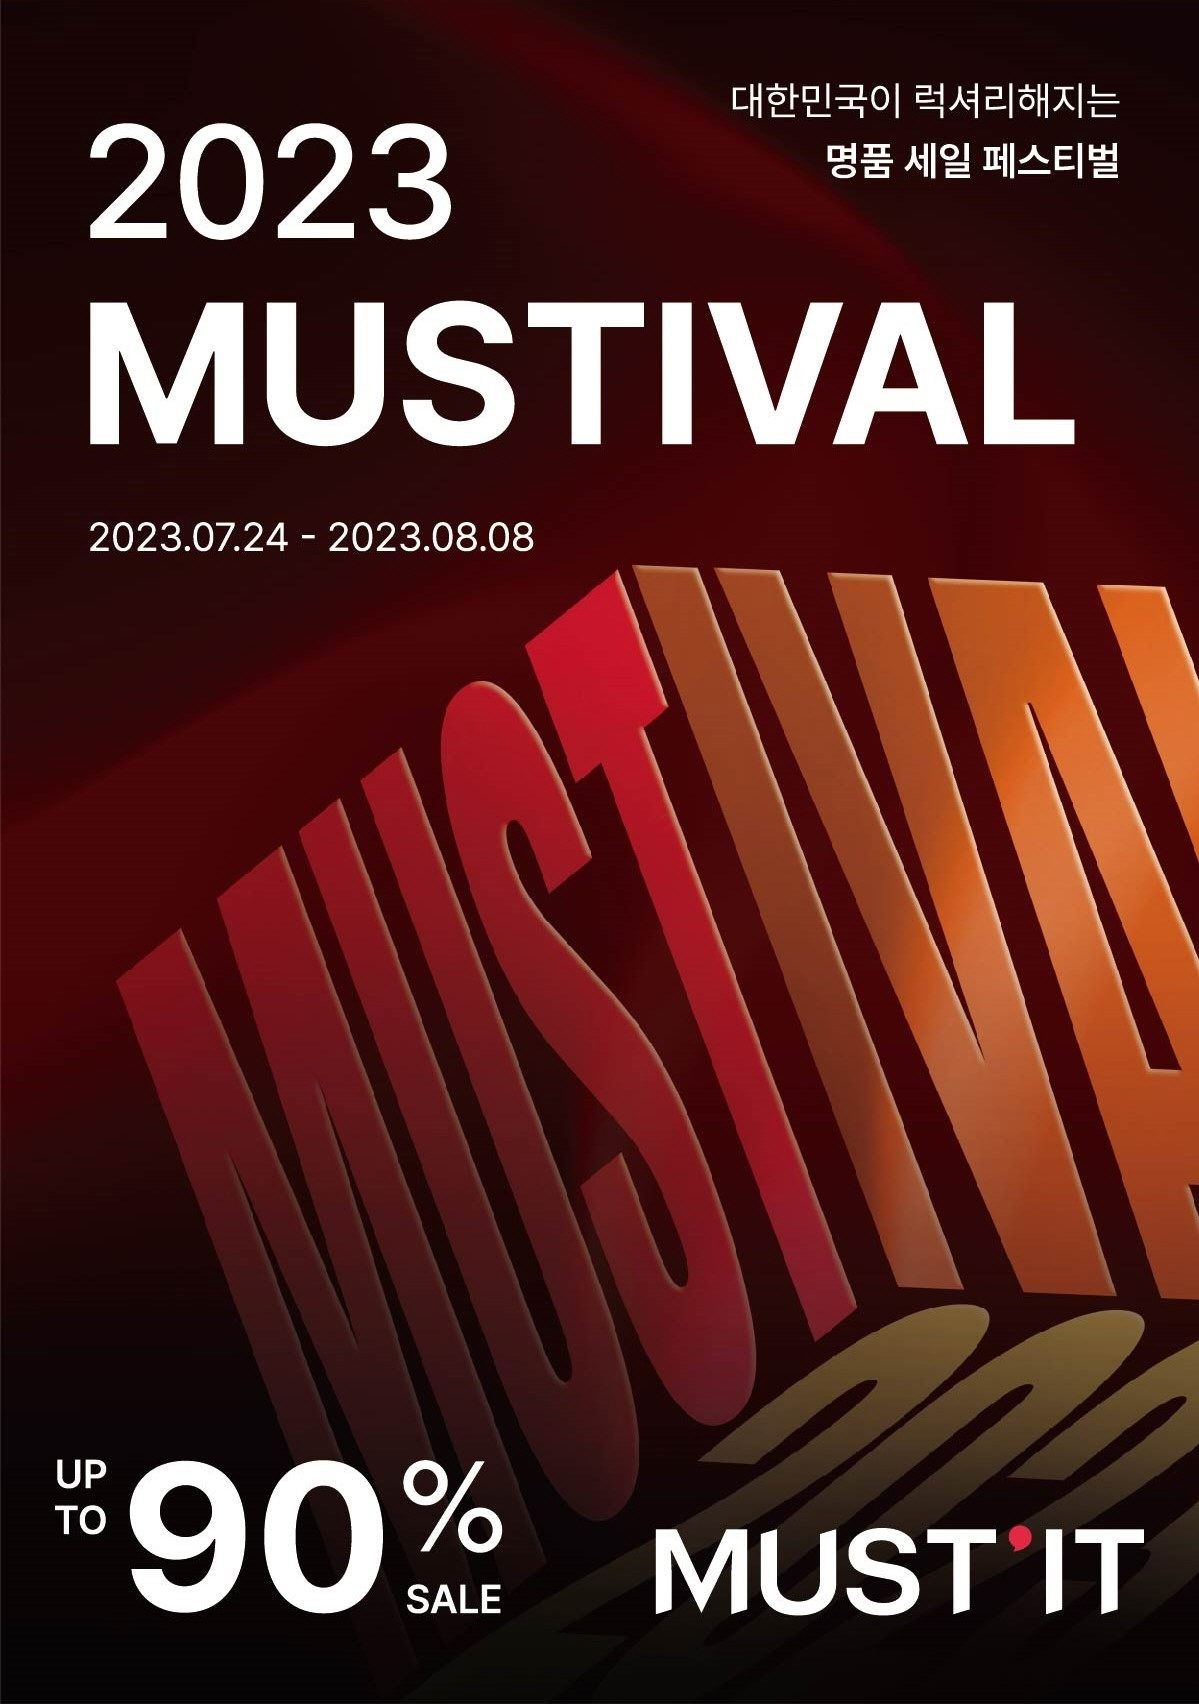 머스트잇이 '2023 MUSTIVAL' 행사를 개최한다. /사진제공=머스트잇 